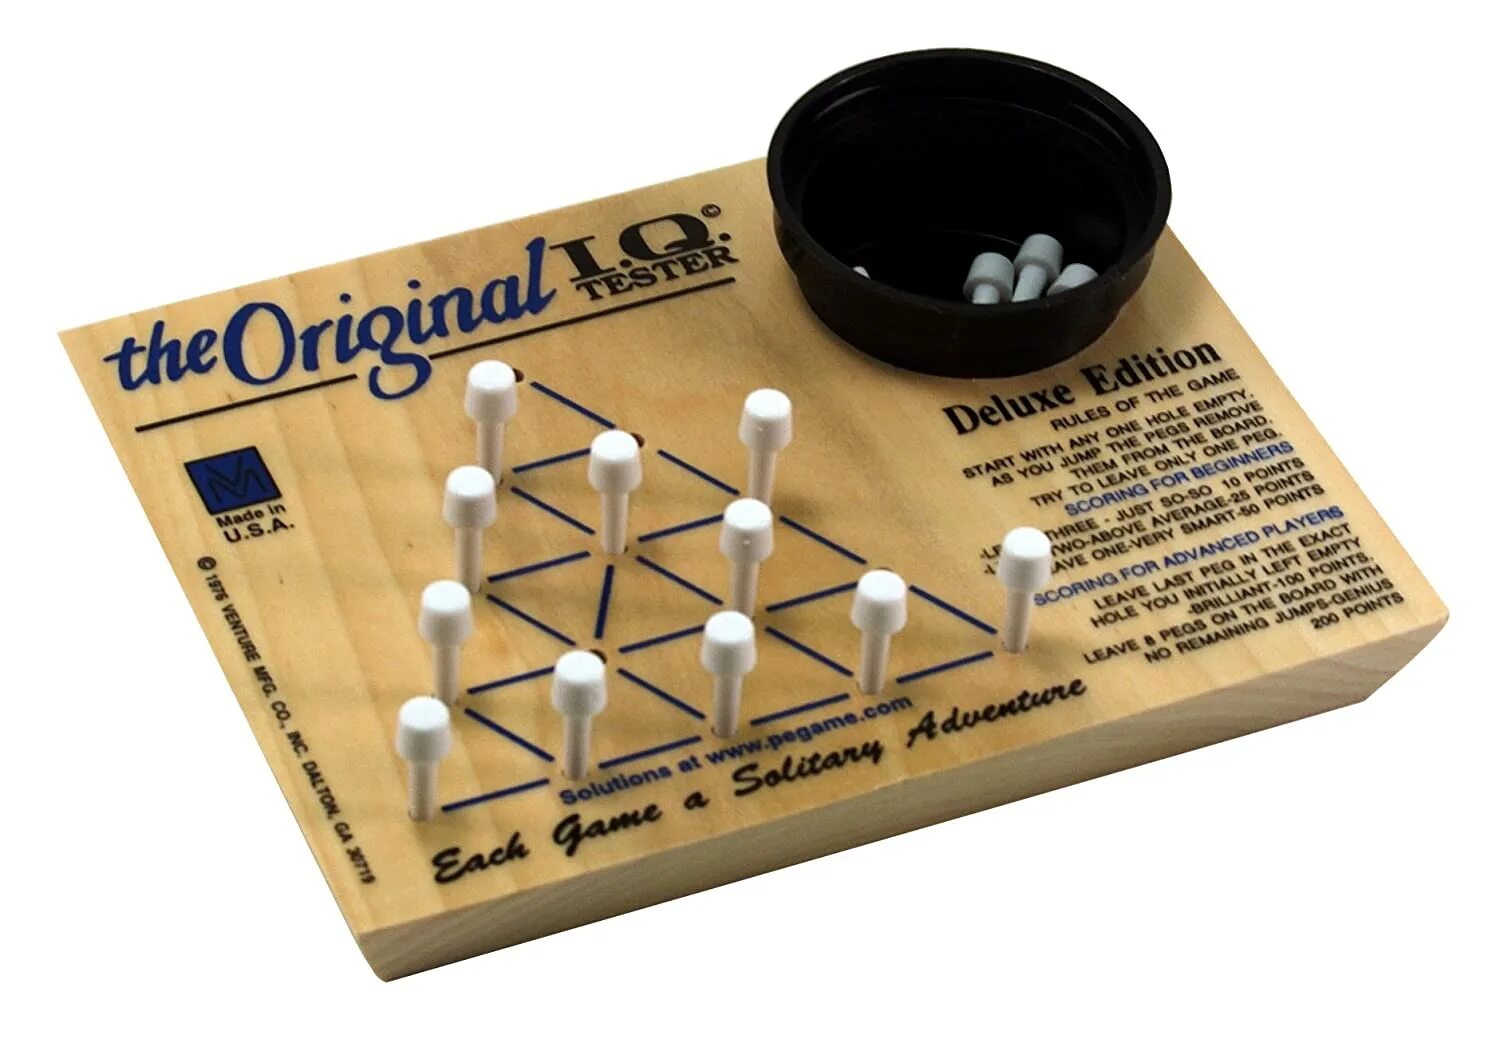 Головоломка оригинал. IQ Test. Головоломка the Original. The Originals IQ Tester. Marble circuit логическая игра.